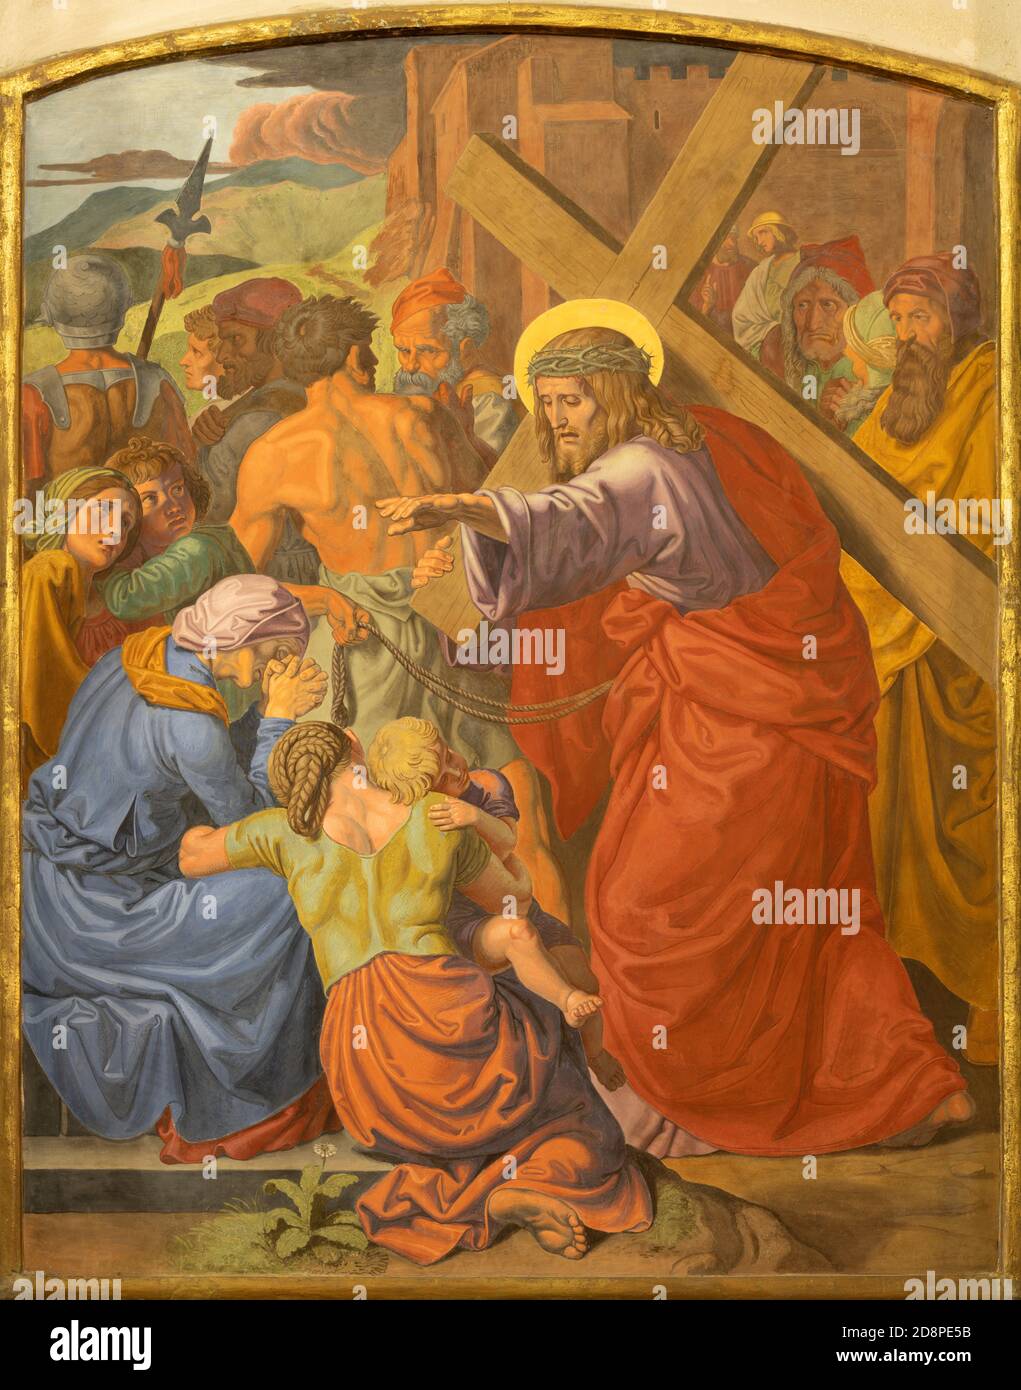 Vienne - le détail de la fresque de Jeus rencontre les femmes de Jérusalem dans le cadre de la gare de Cross Way dans l'église de Saint Jean le Nepomuk. Banque D'Images